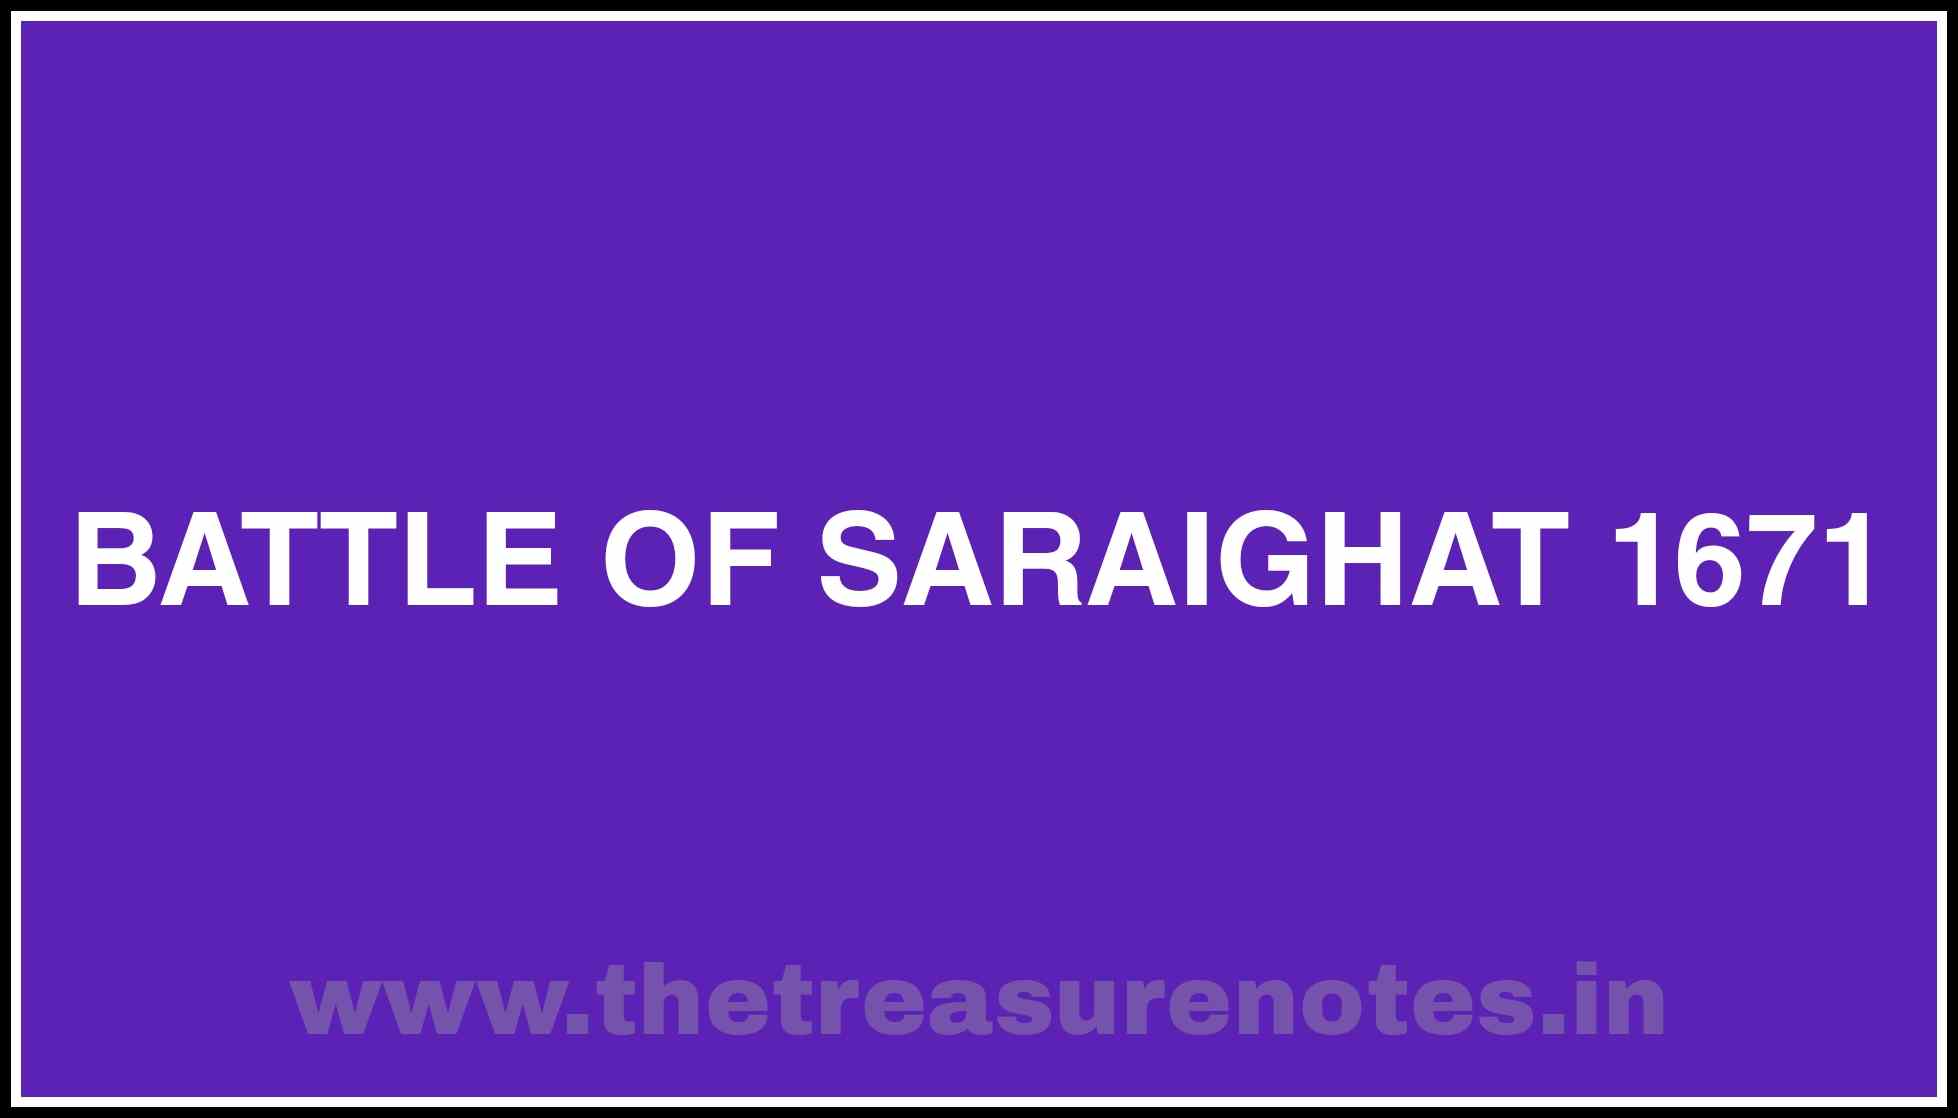 saraighat war essay in assamese language